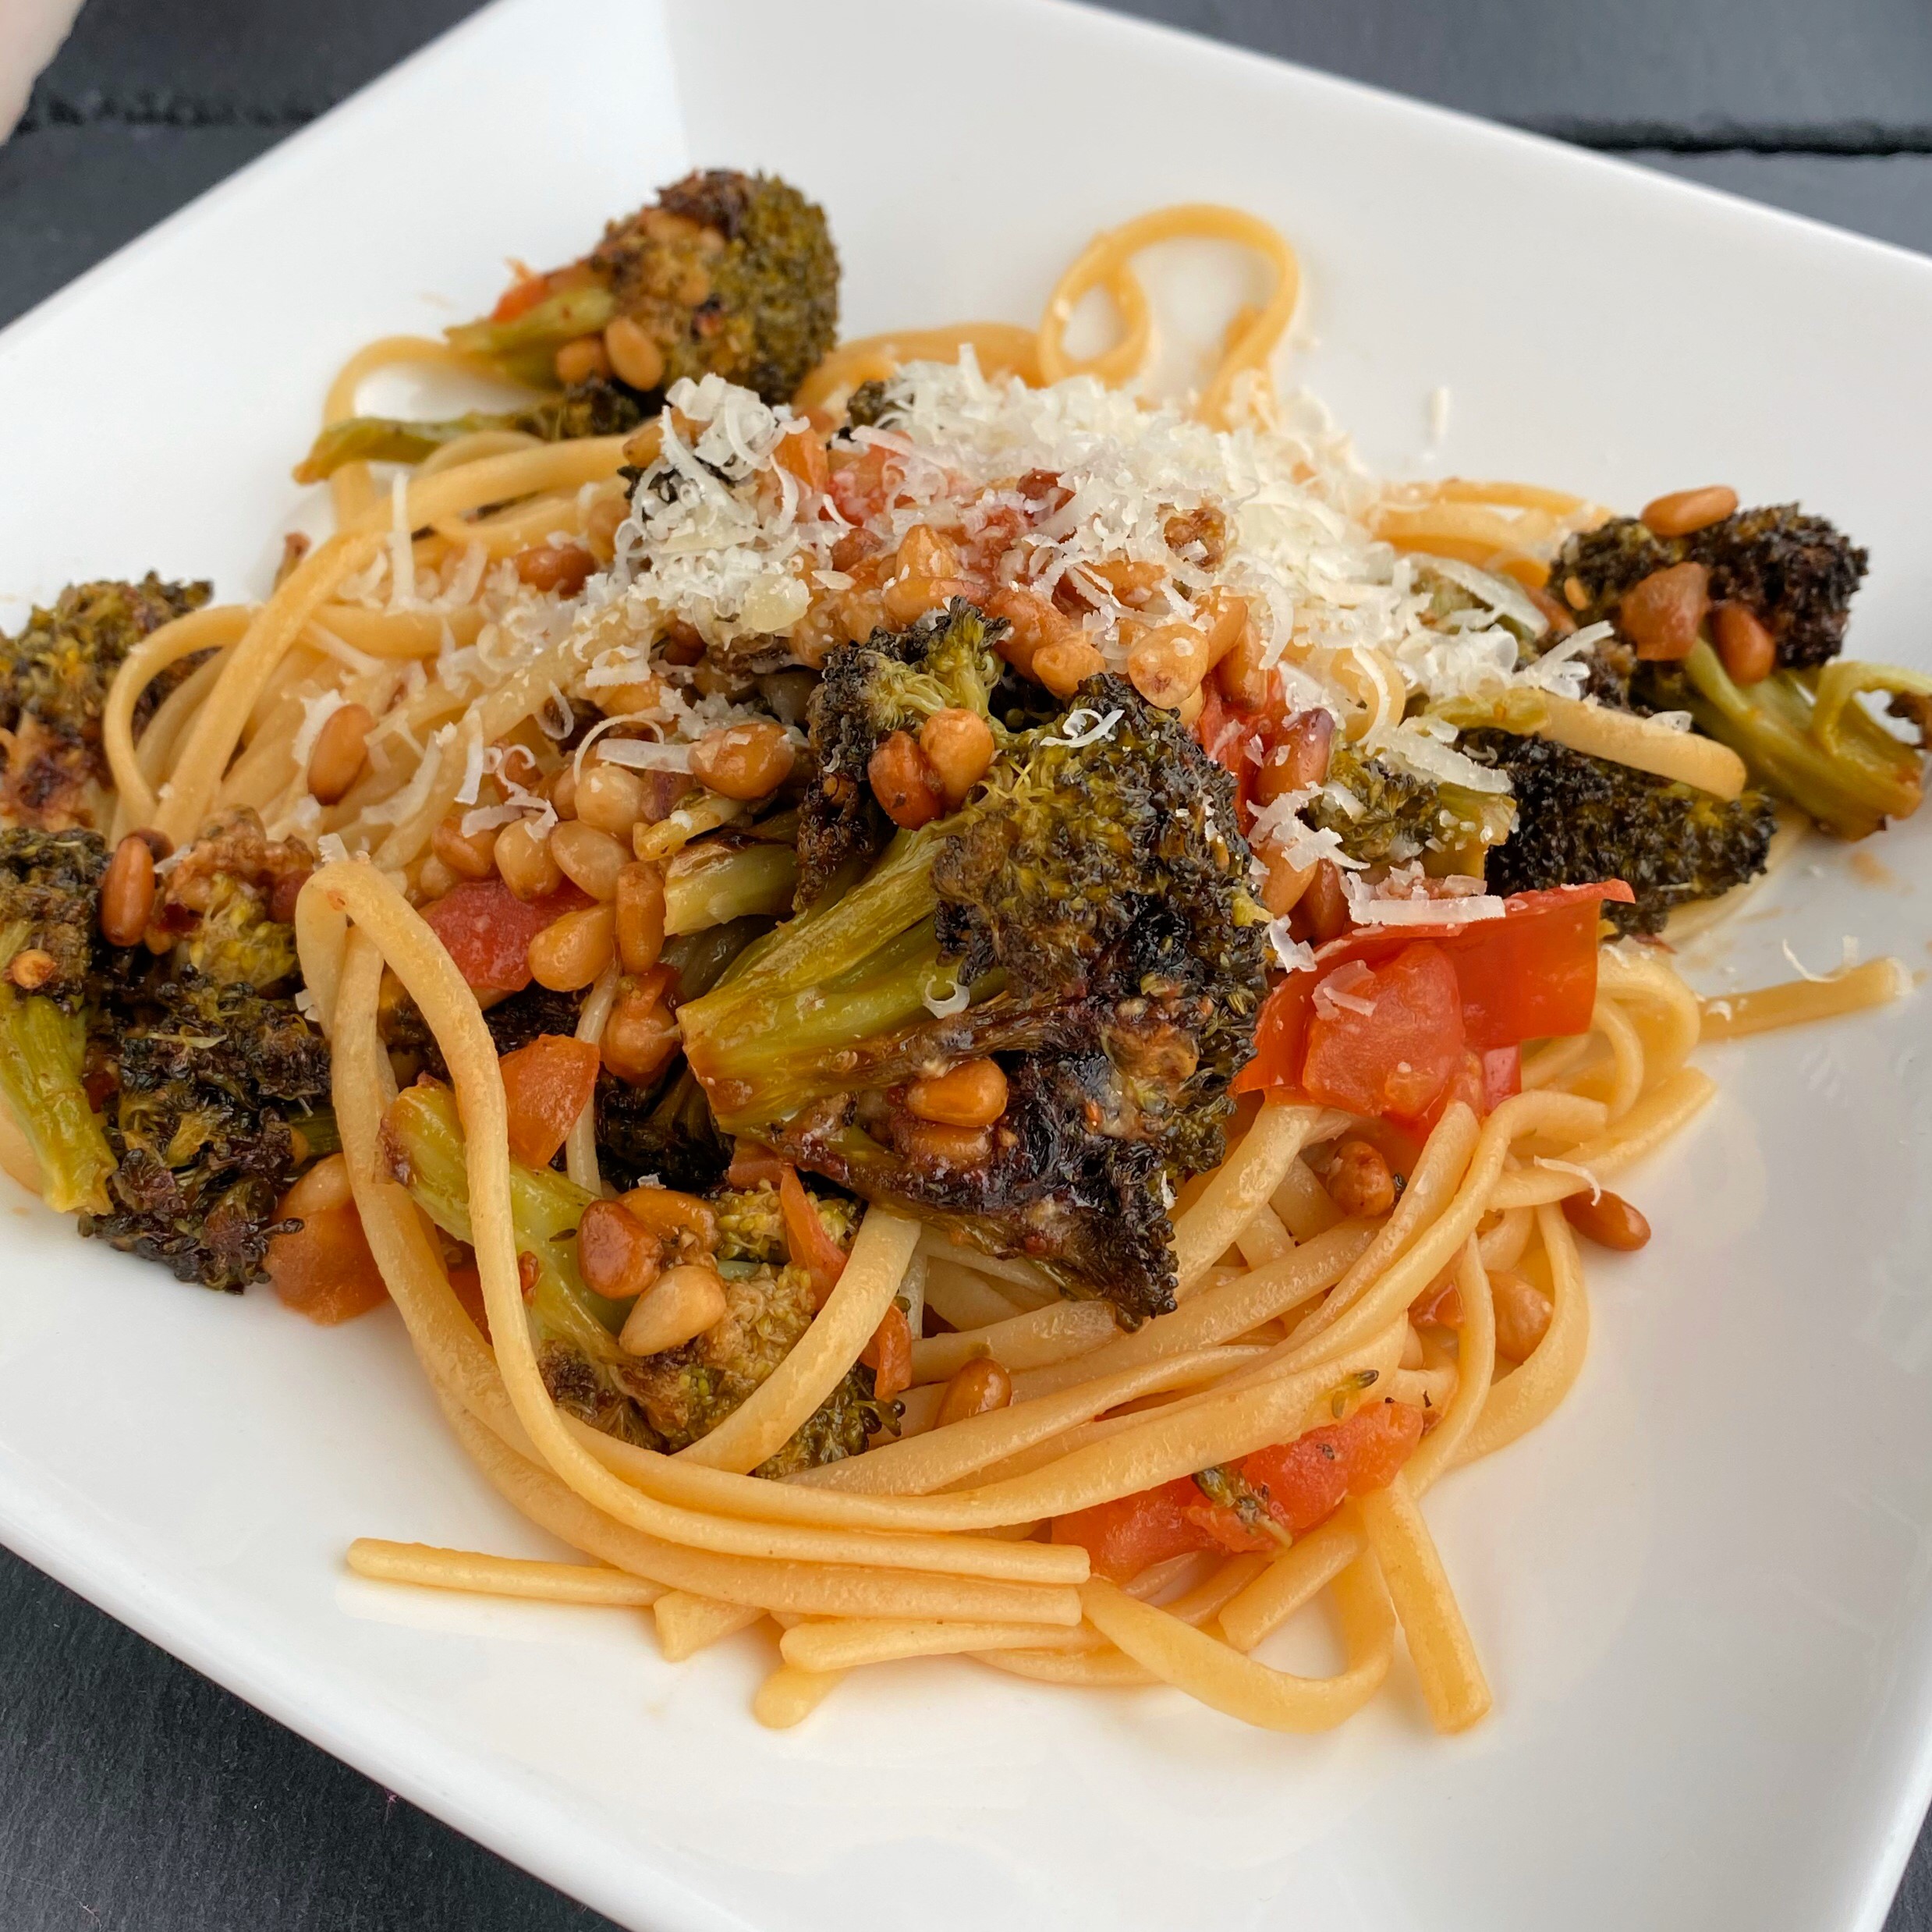 Linguini with Roasted Broccoli Pesto